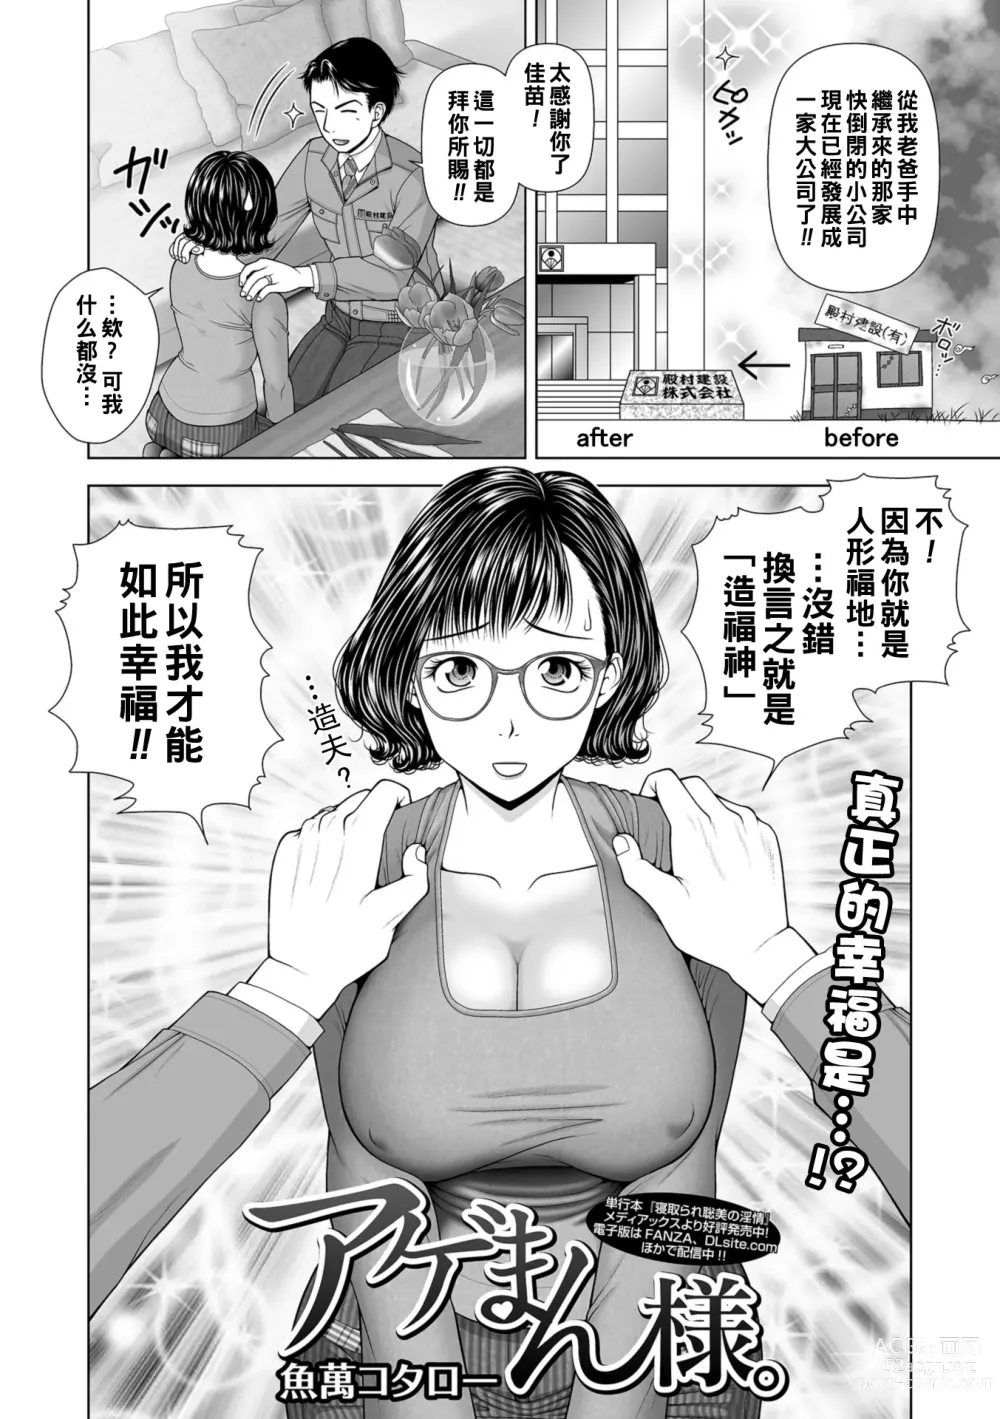 Page 2 of manga Ageman-Sama.